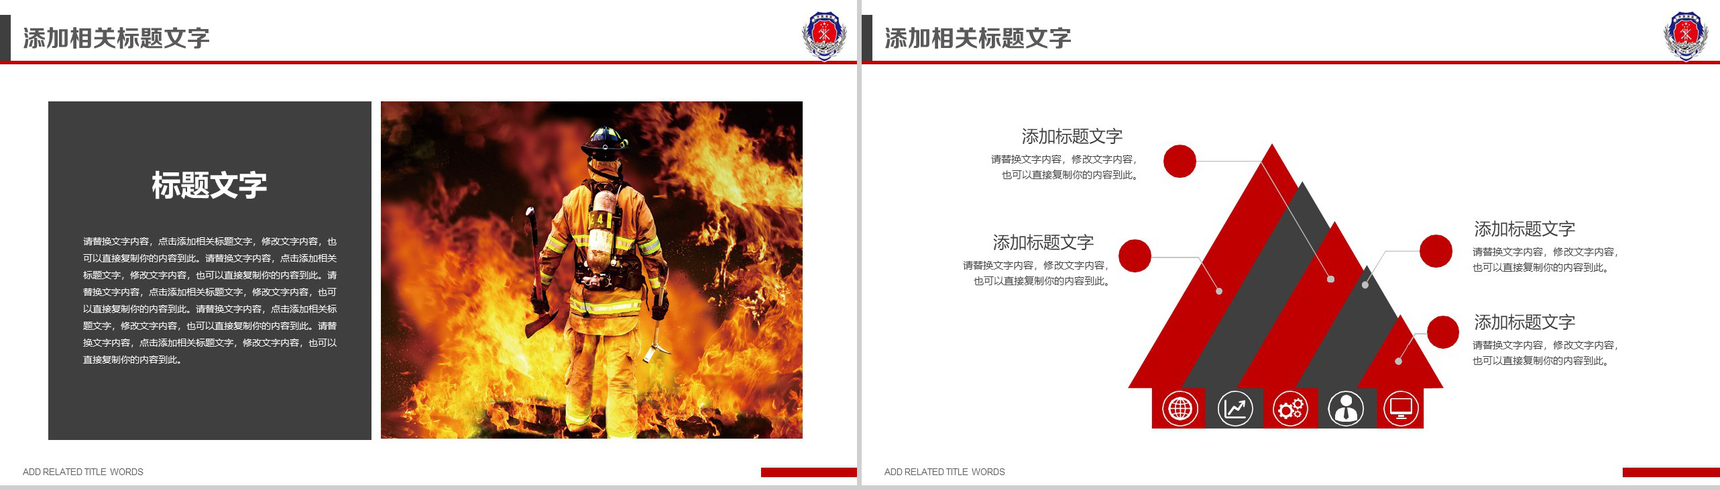 中国消防 防火安全PPT模板-6